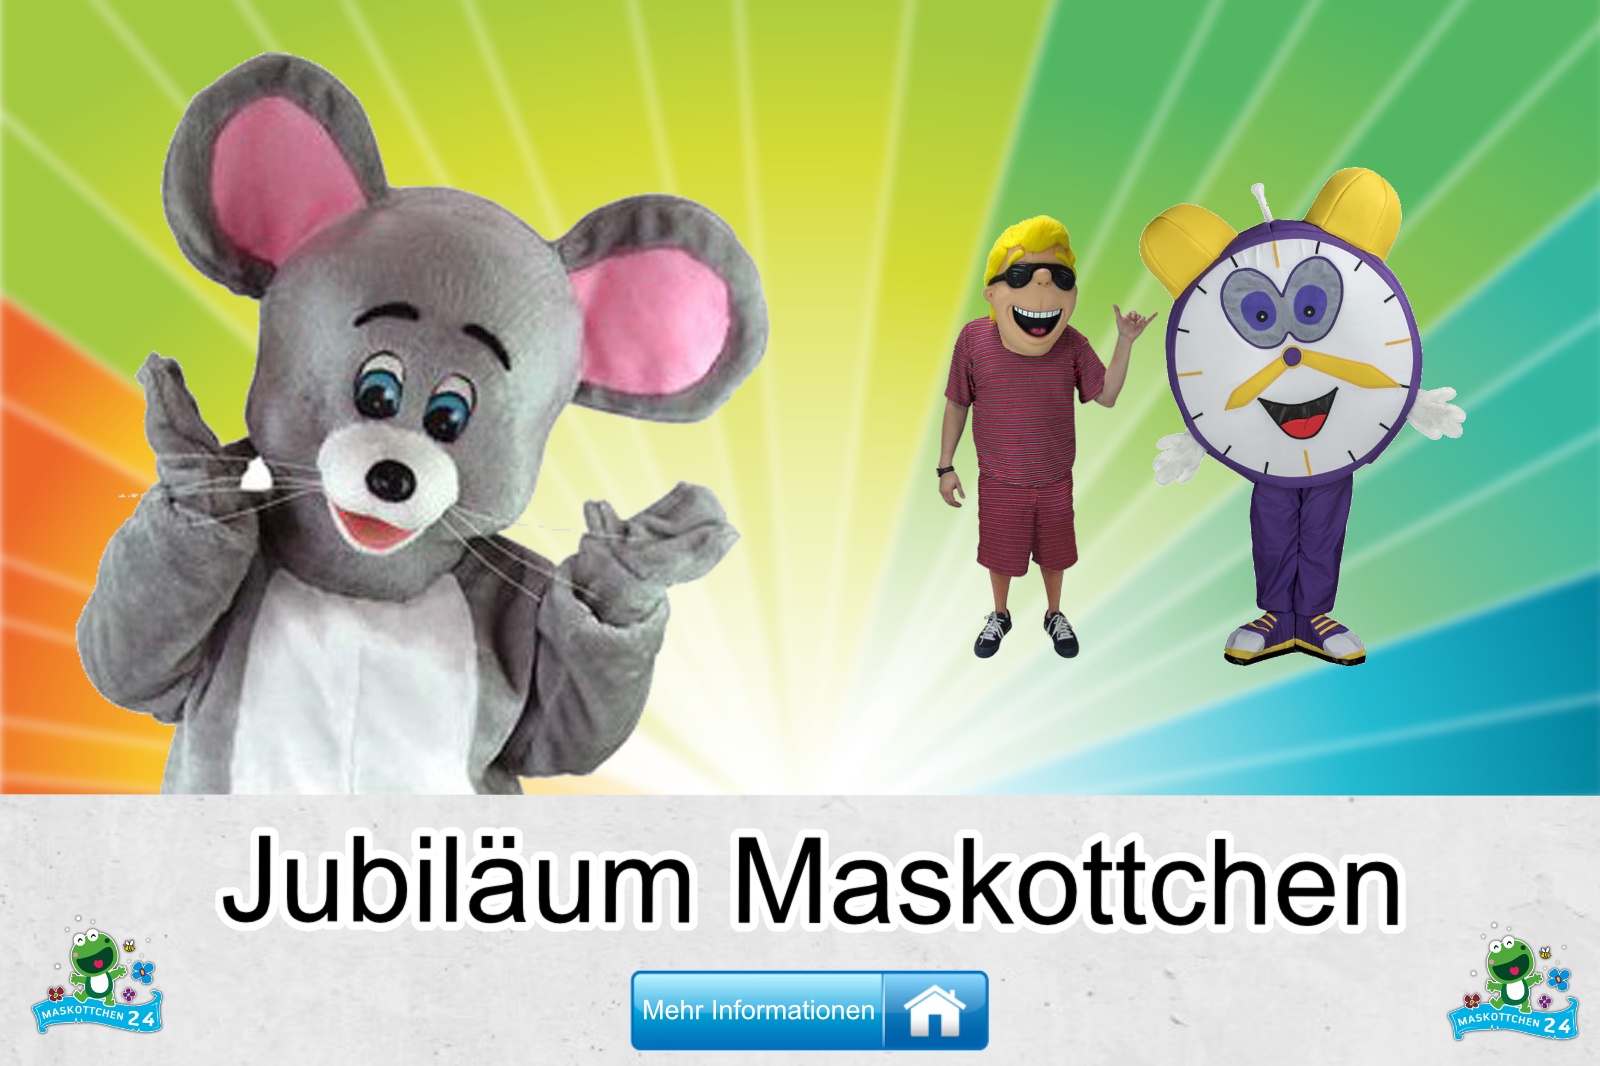 Jubiläum Maskottchen Kostüm kaufen, günstige Produktion / Herstellung